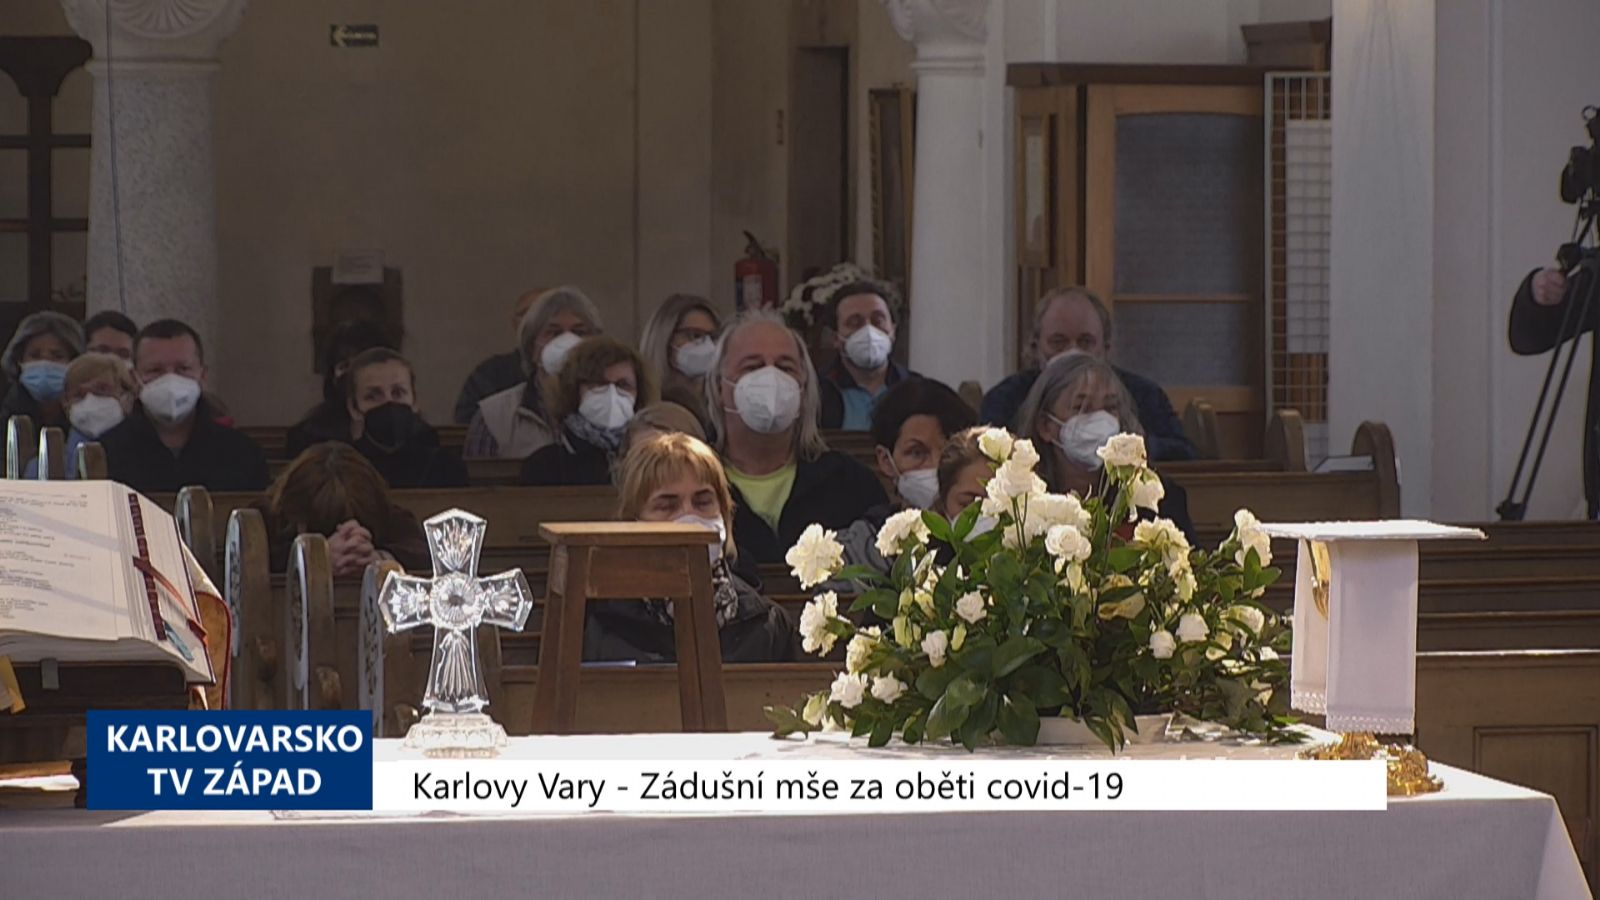 Karlovy Vary: Zádušní mše za oběti covid-19 (TV Západ)